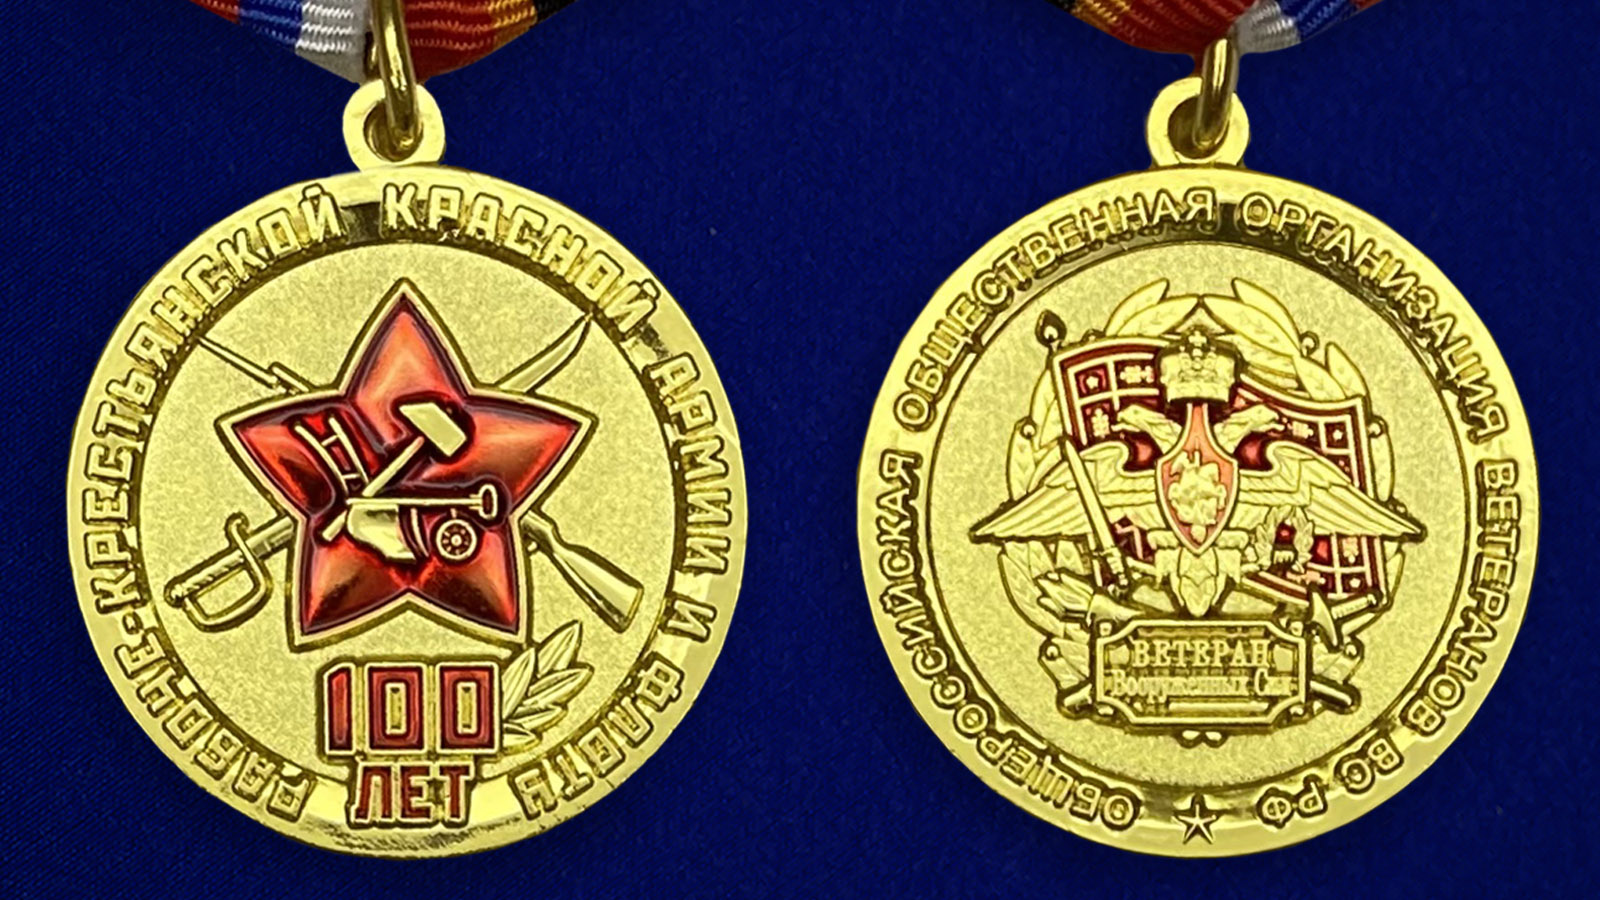 Купить памятную юбилейную медаль 100 лет Рабоче-крестьянской Красной Армии и Флоту